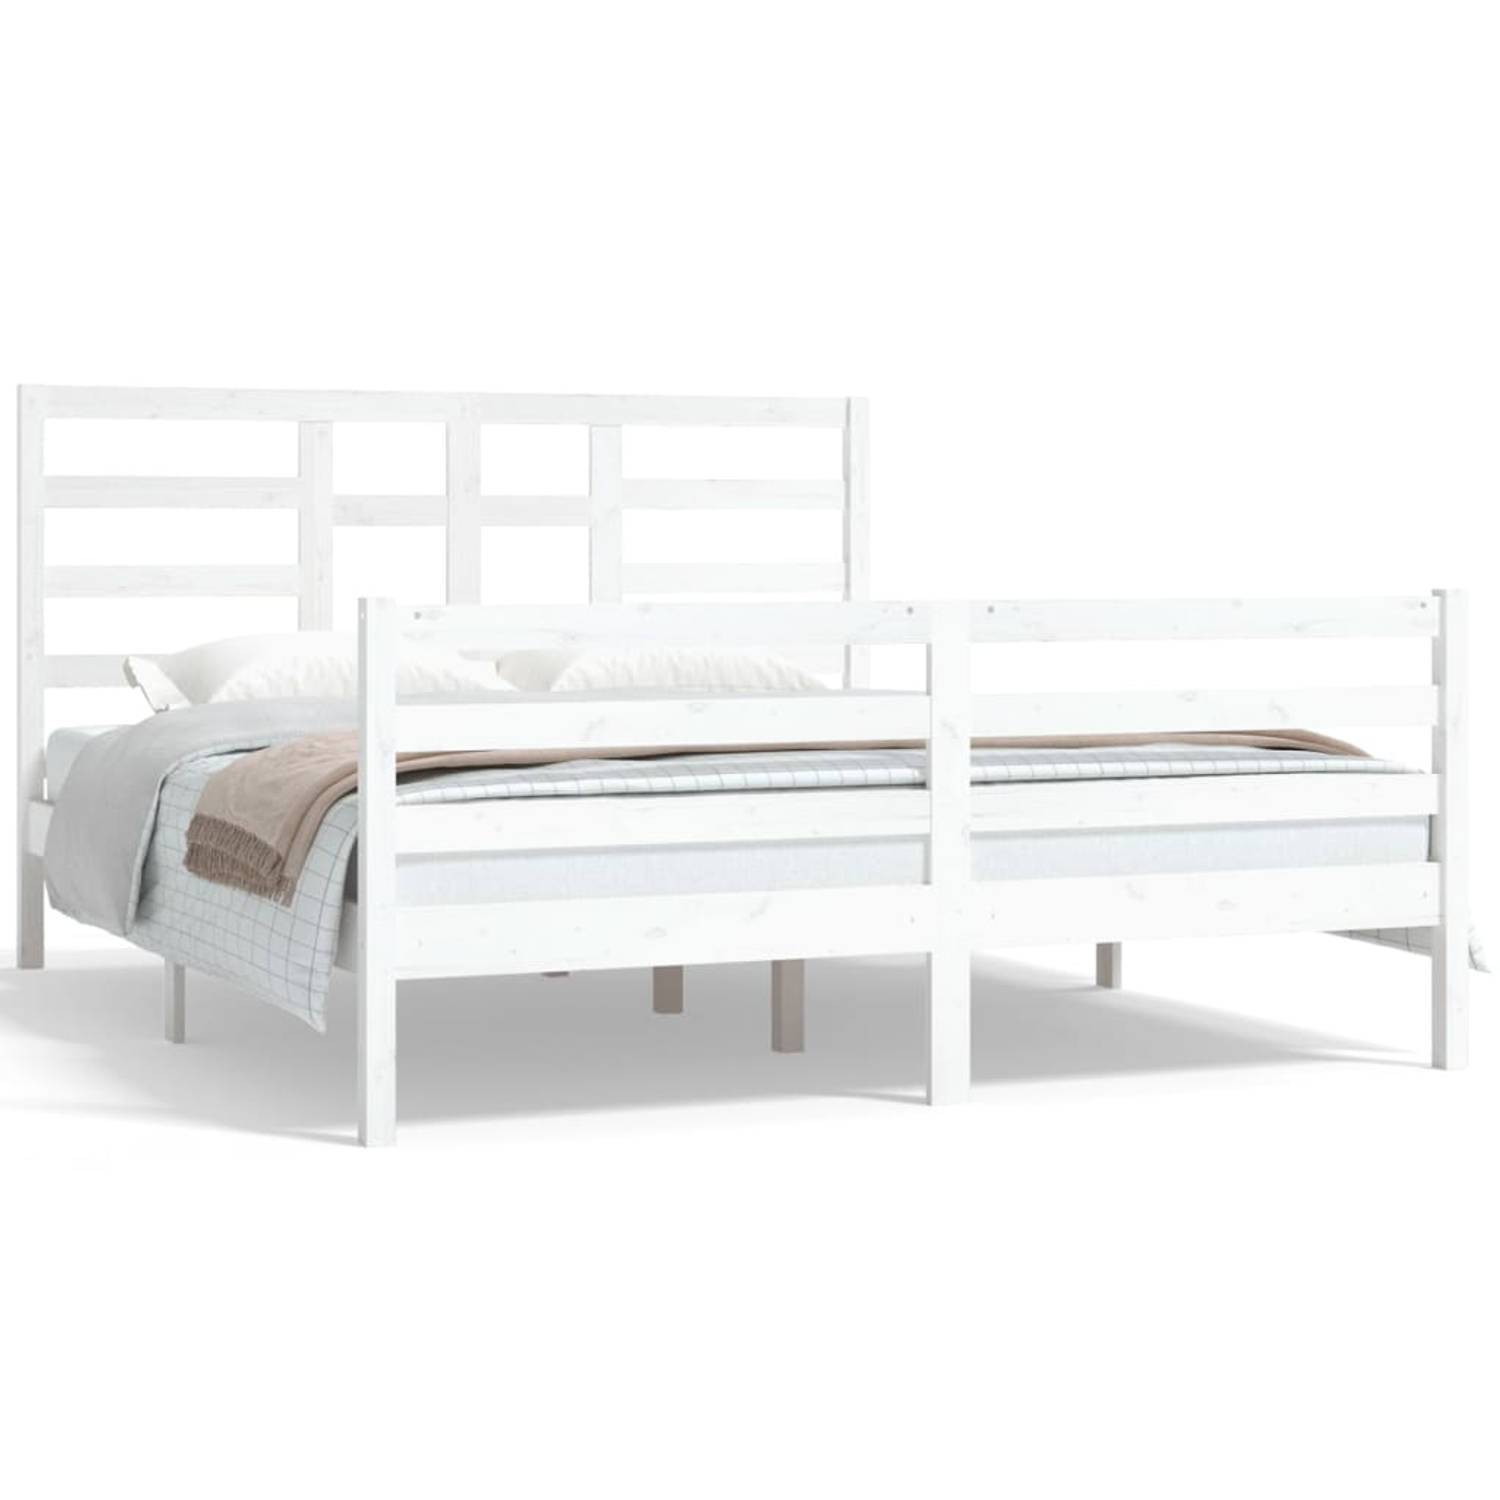 The Living Store Bedframe massief hout wit 160x200 cm - Bedframe - Bedframes - Bed - Bedbodem - Ledikant - Bed Frame - Massief Houten Bedframe - Slaapmeubel - Tweepersoonsbed - Bed